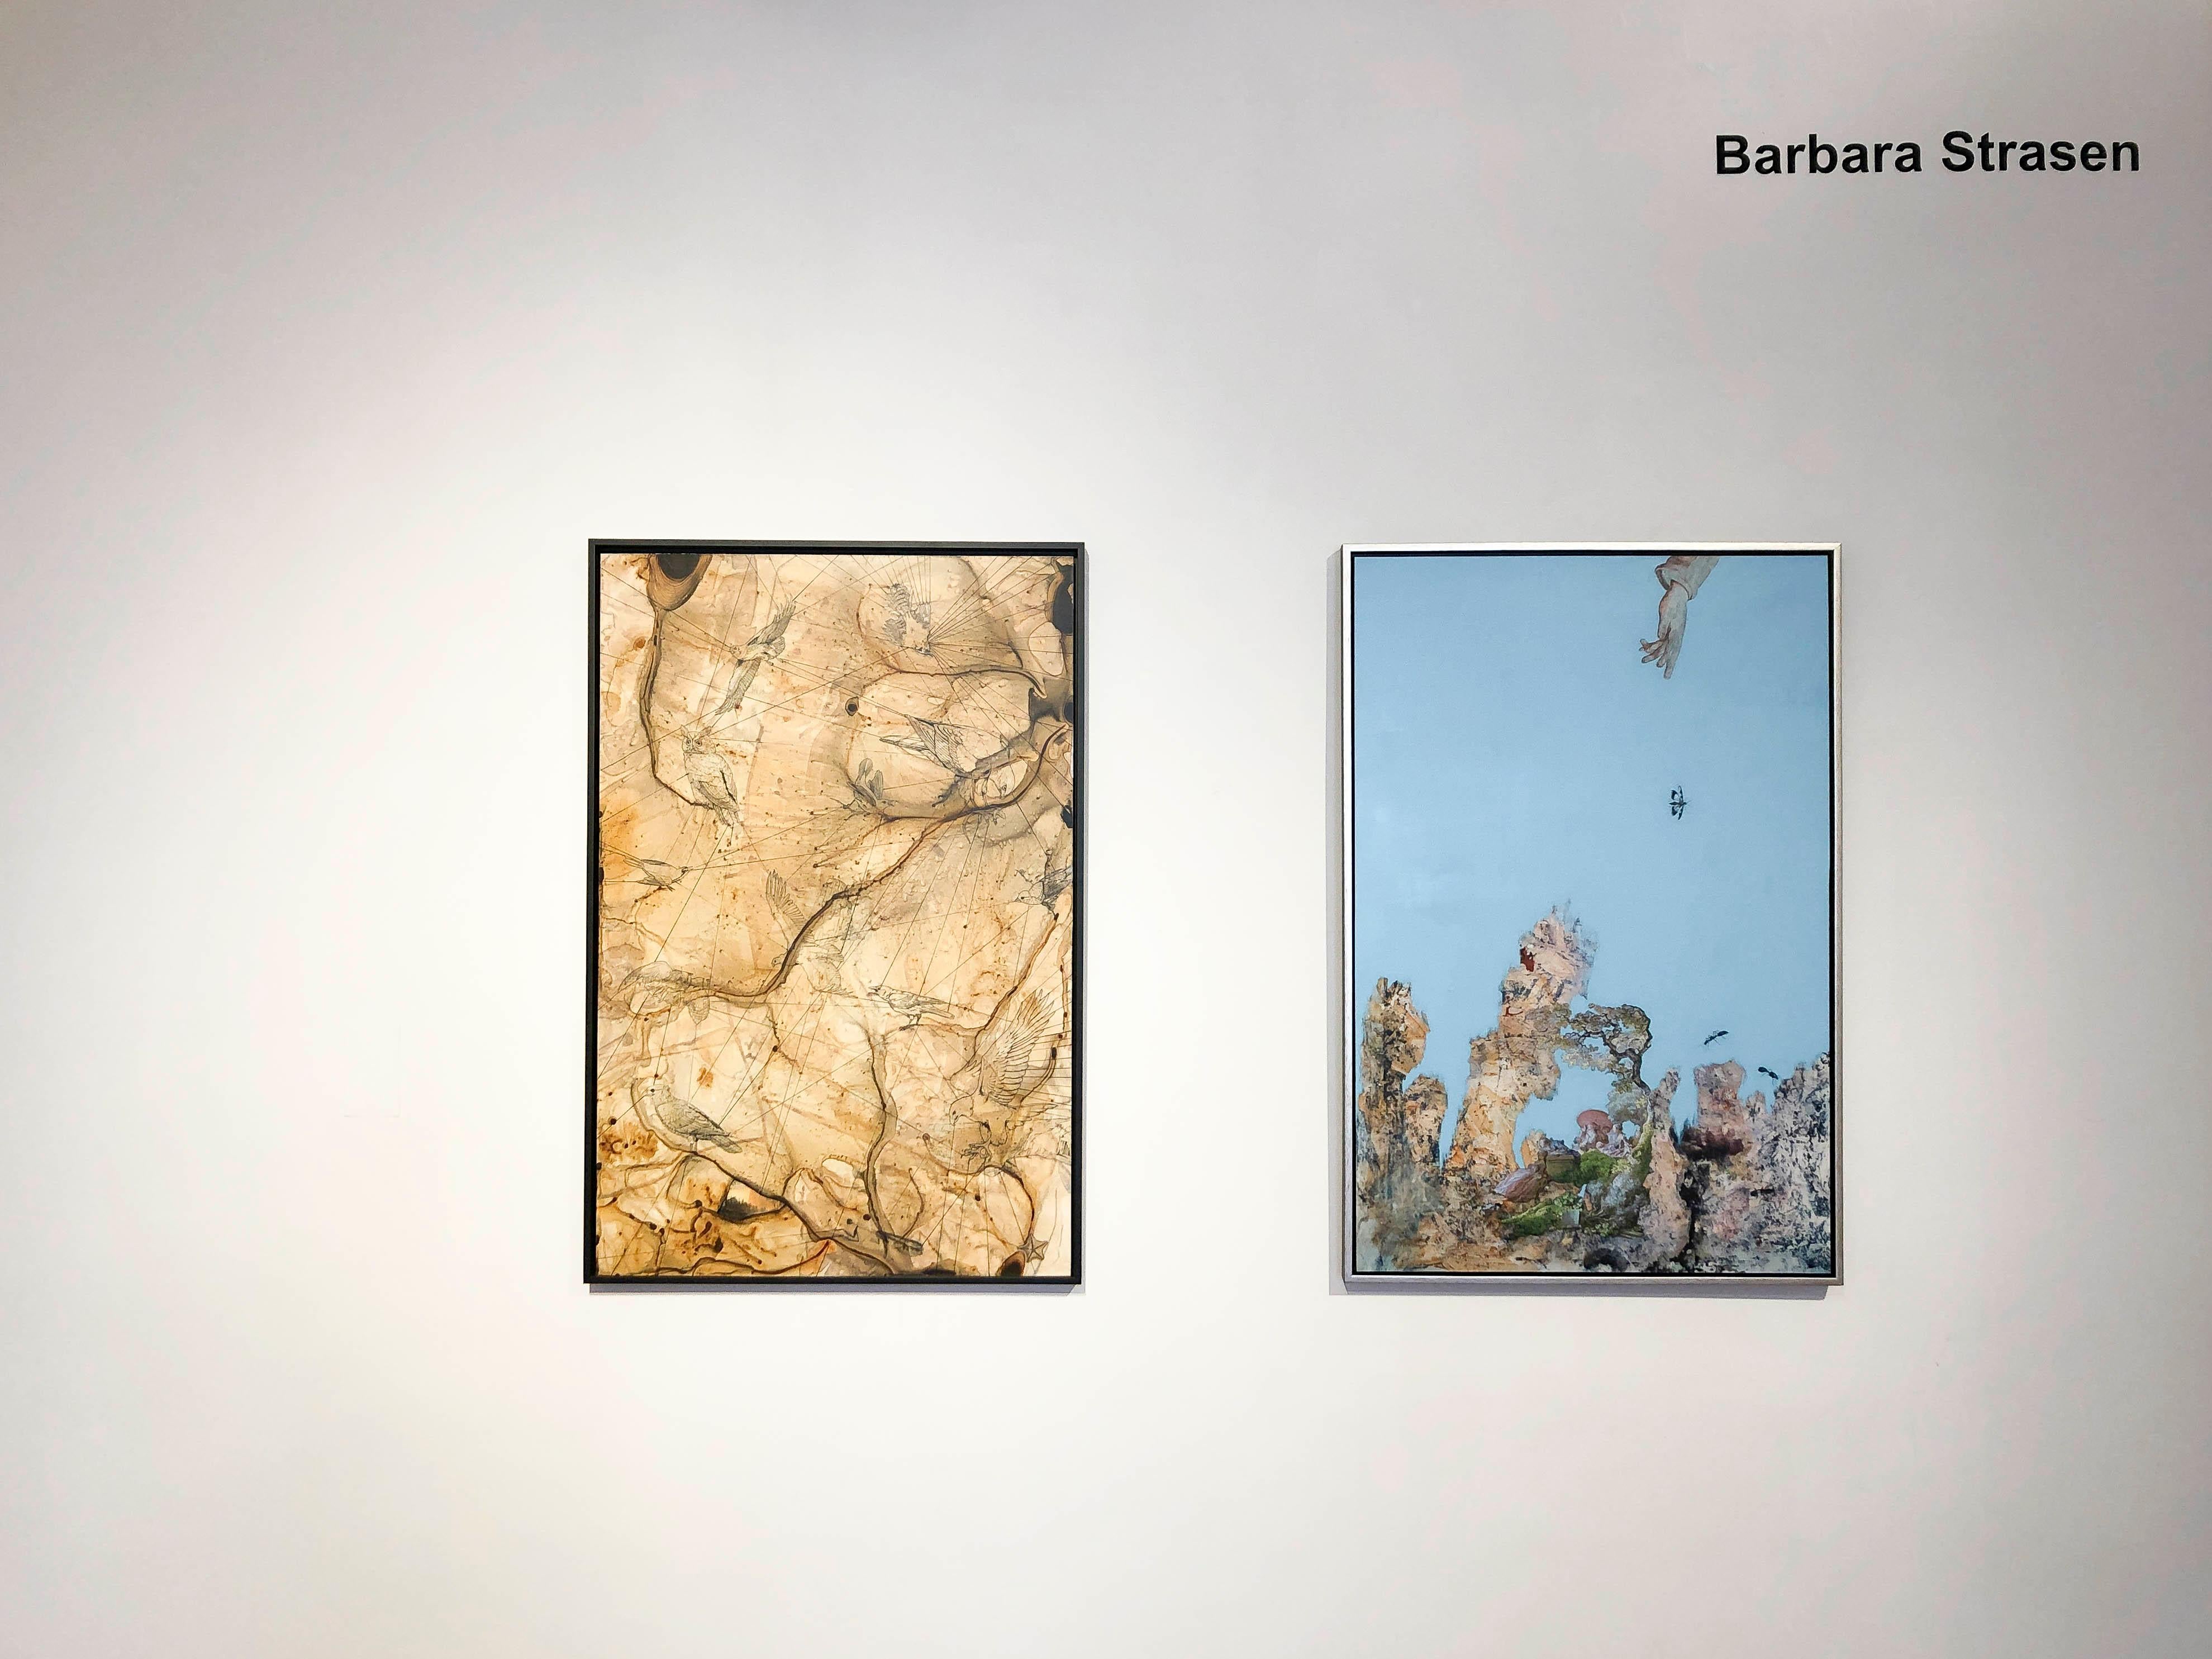 Luftfahrt, neutral abstrahierte Vögel, Mischtechnik – Painting von Barbara Strasen